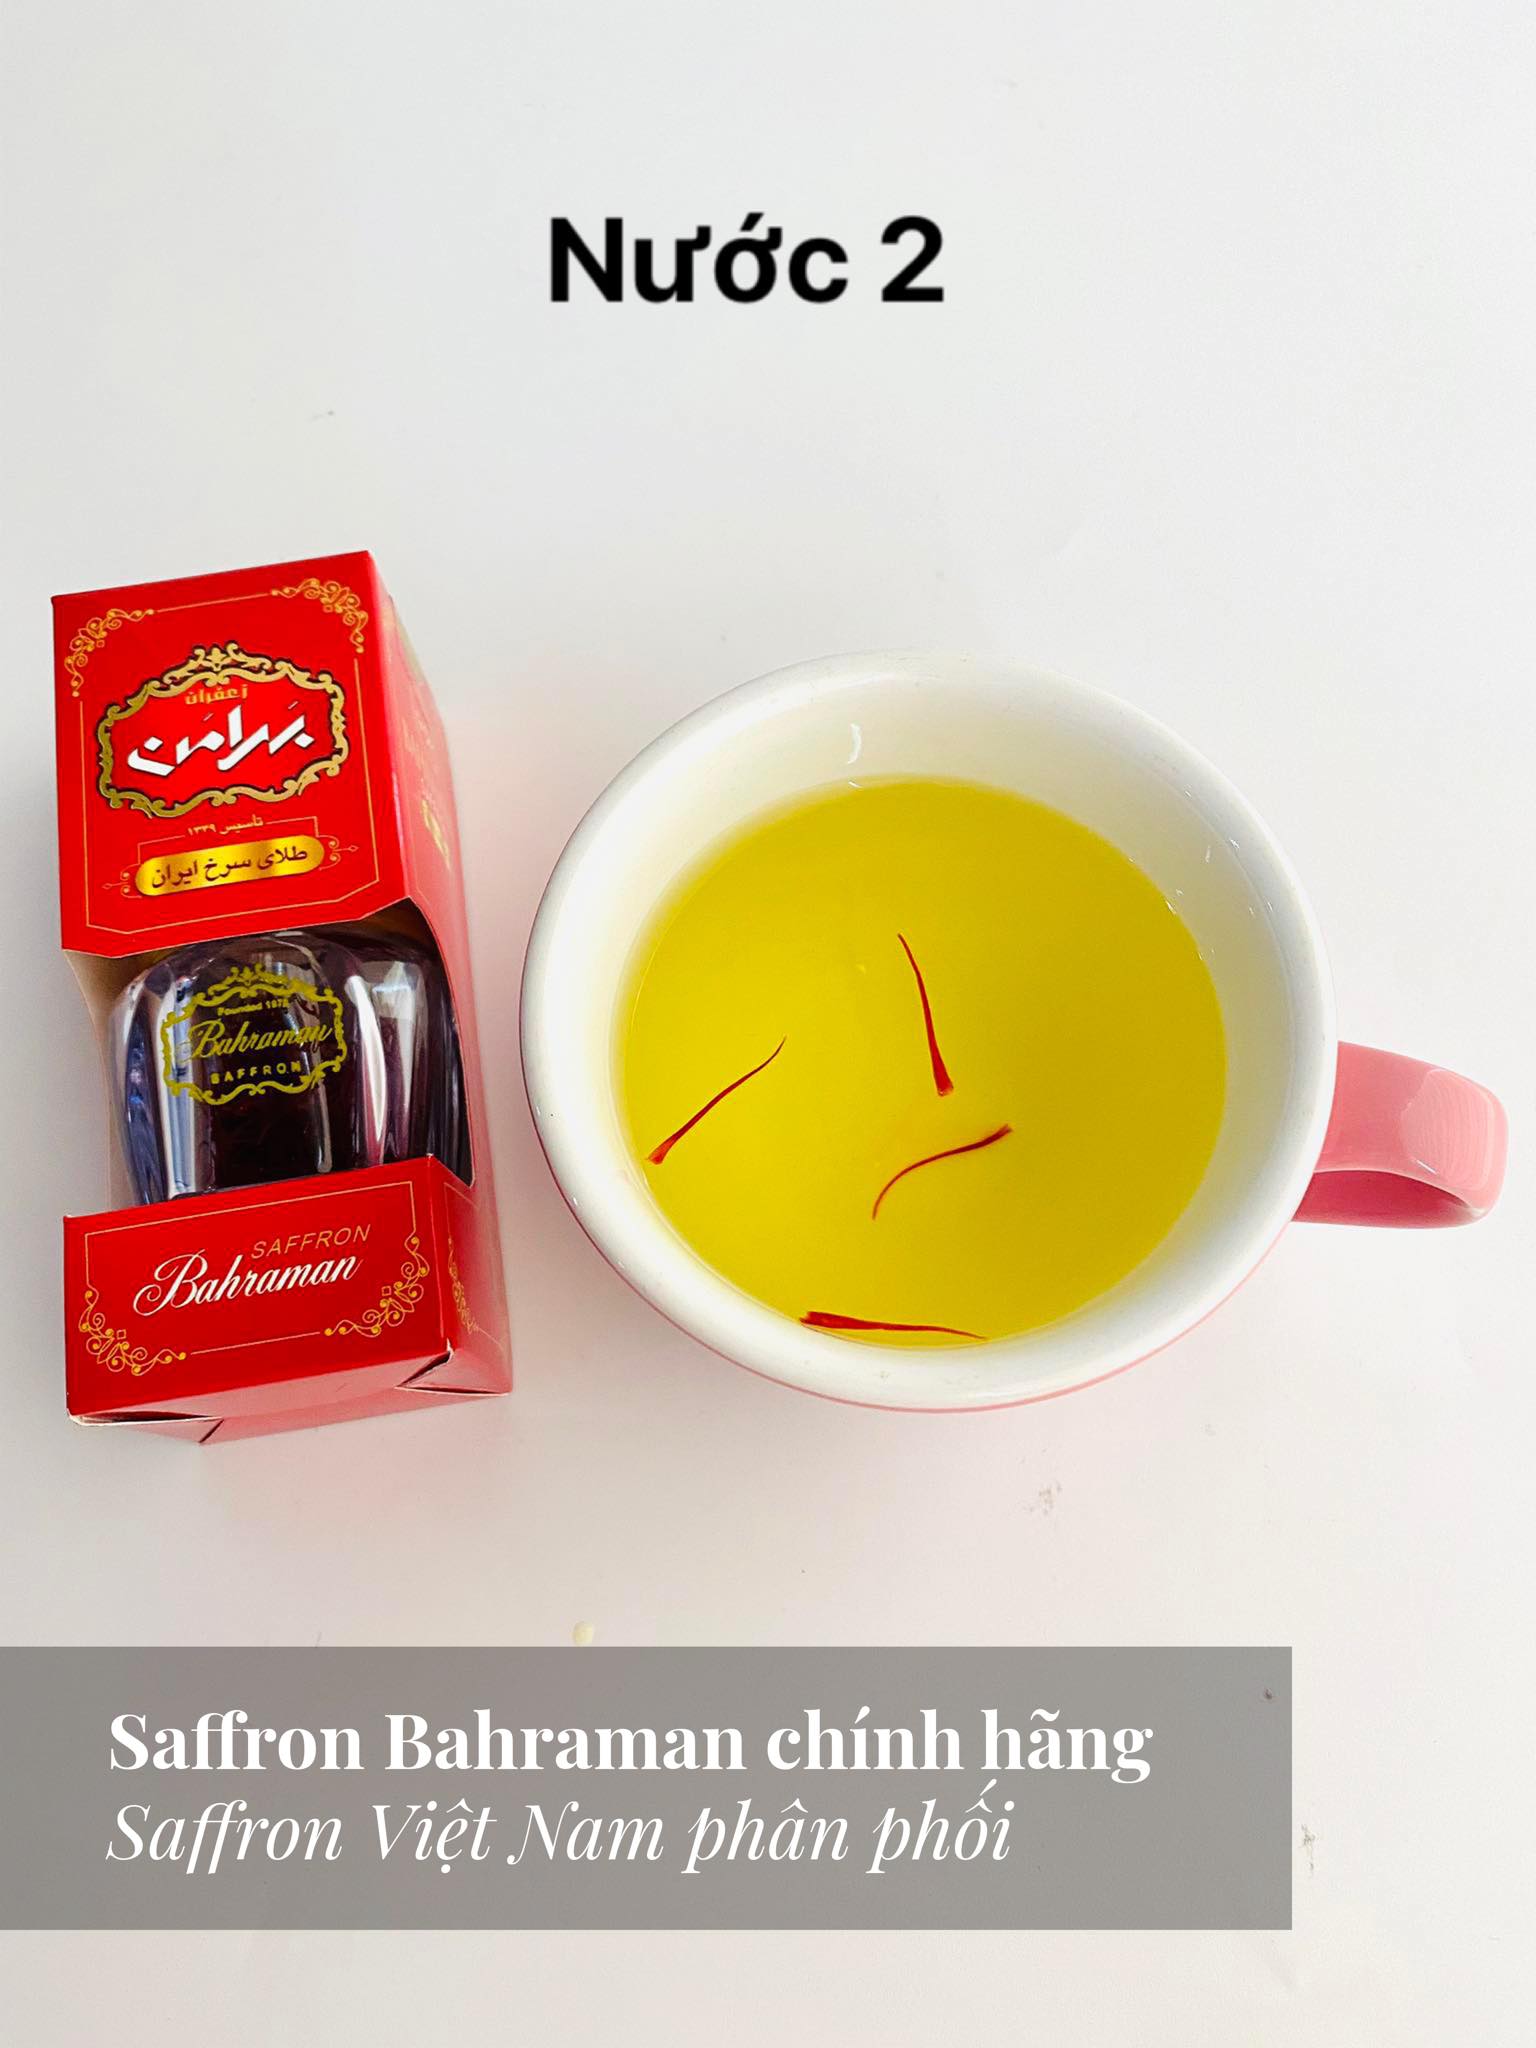 Saffron Bahraman chính hãng khi pha ra nước có màu vàng óng, pha 3 lần nước vẫn đẹp 